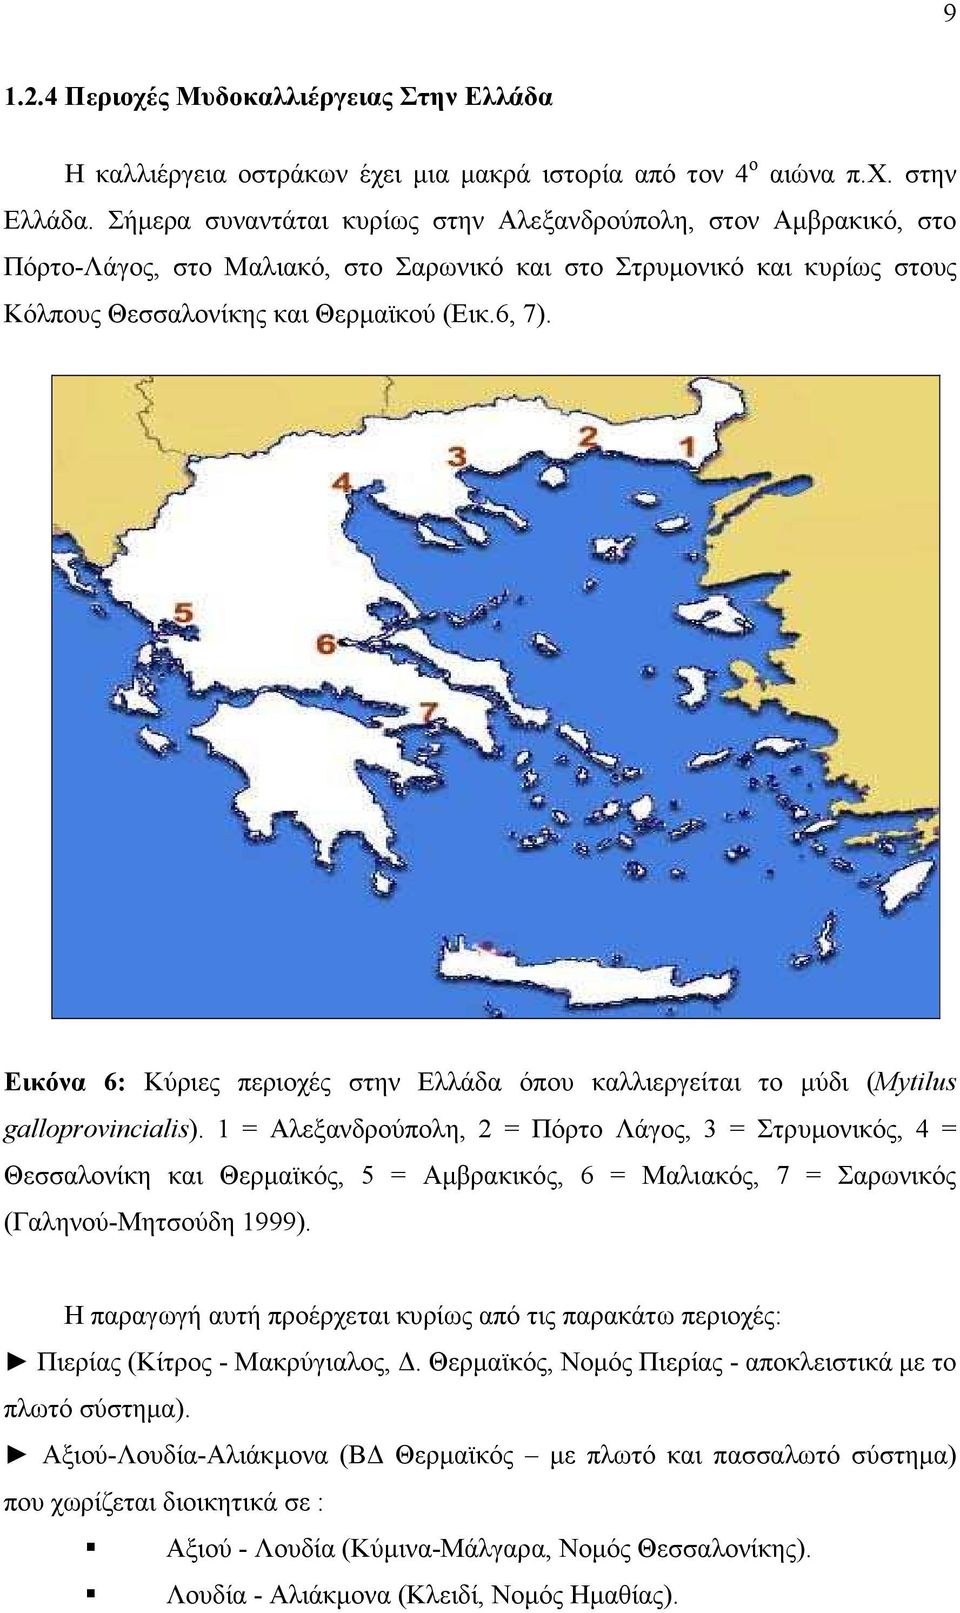 Εικόνα 6: Κύριες περιοχές στην Ελλάδα όπου καλλιεργείται το µύδι (Mytilus galloprovincialis).